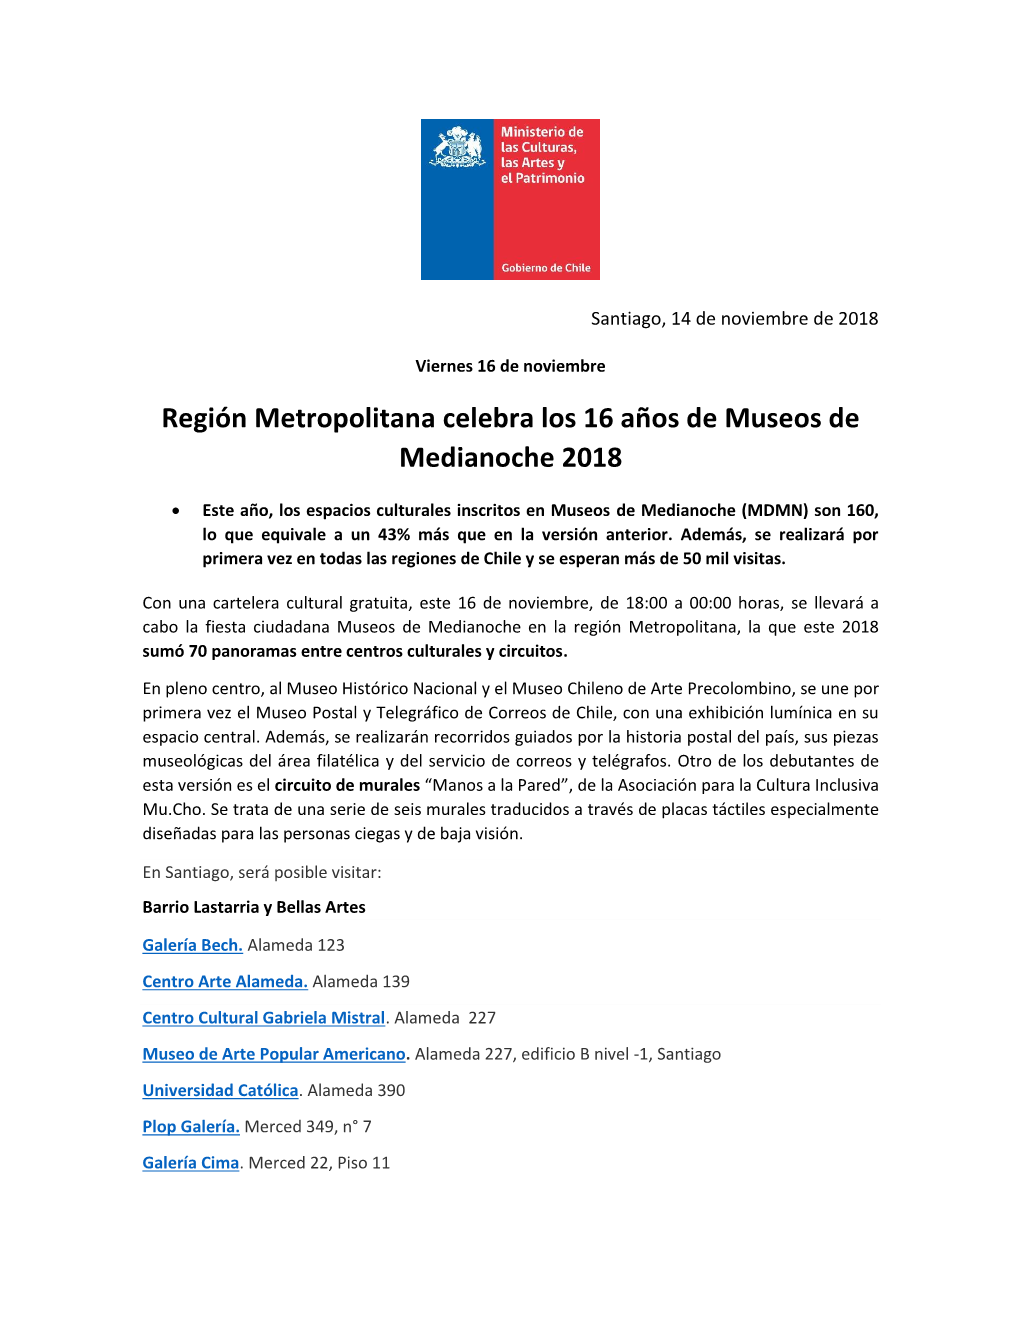 Región Metropolitana Celebra Los 16 Años De Museos De Medianoche 2018